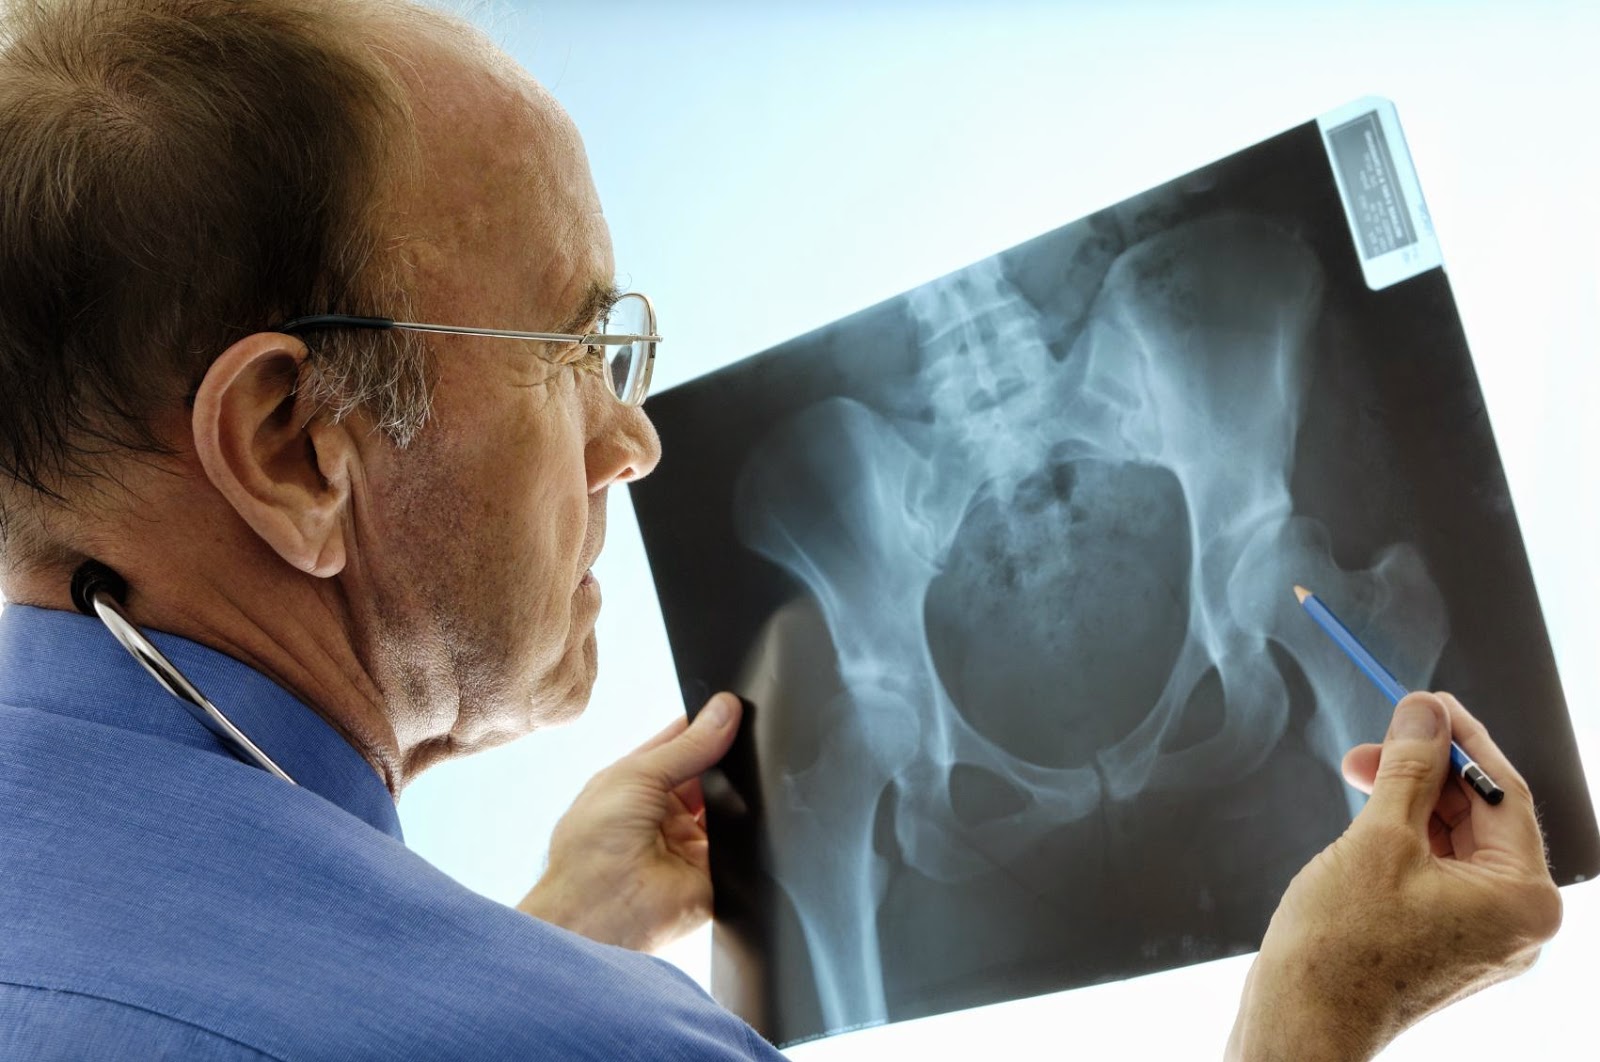 Pruebas y Exámenes comprobar osteoporosis